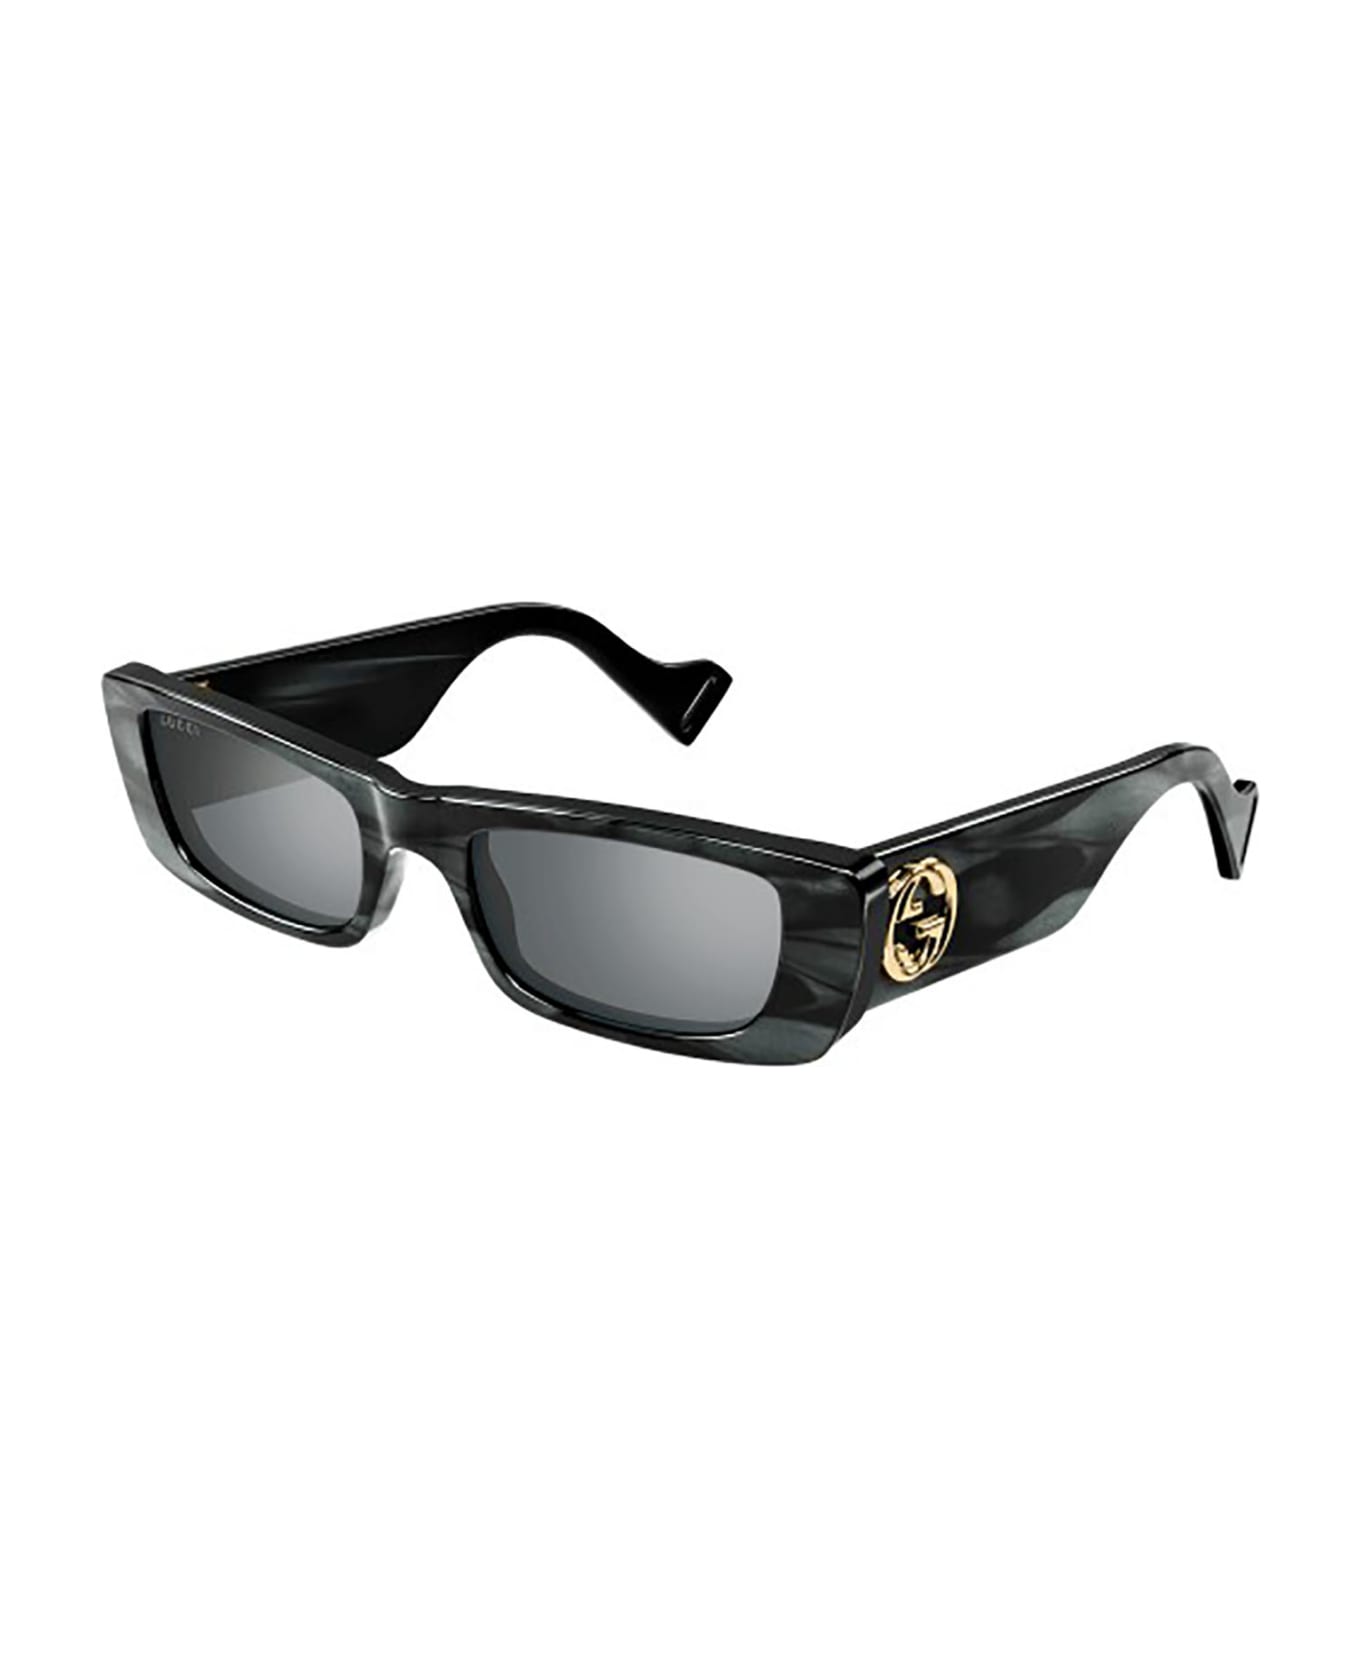 Gucci Eyewear GG0516S Sunglasses - Grey Grey Silver